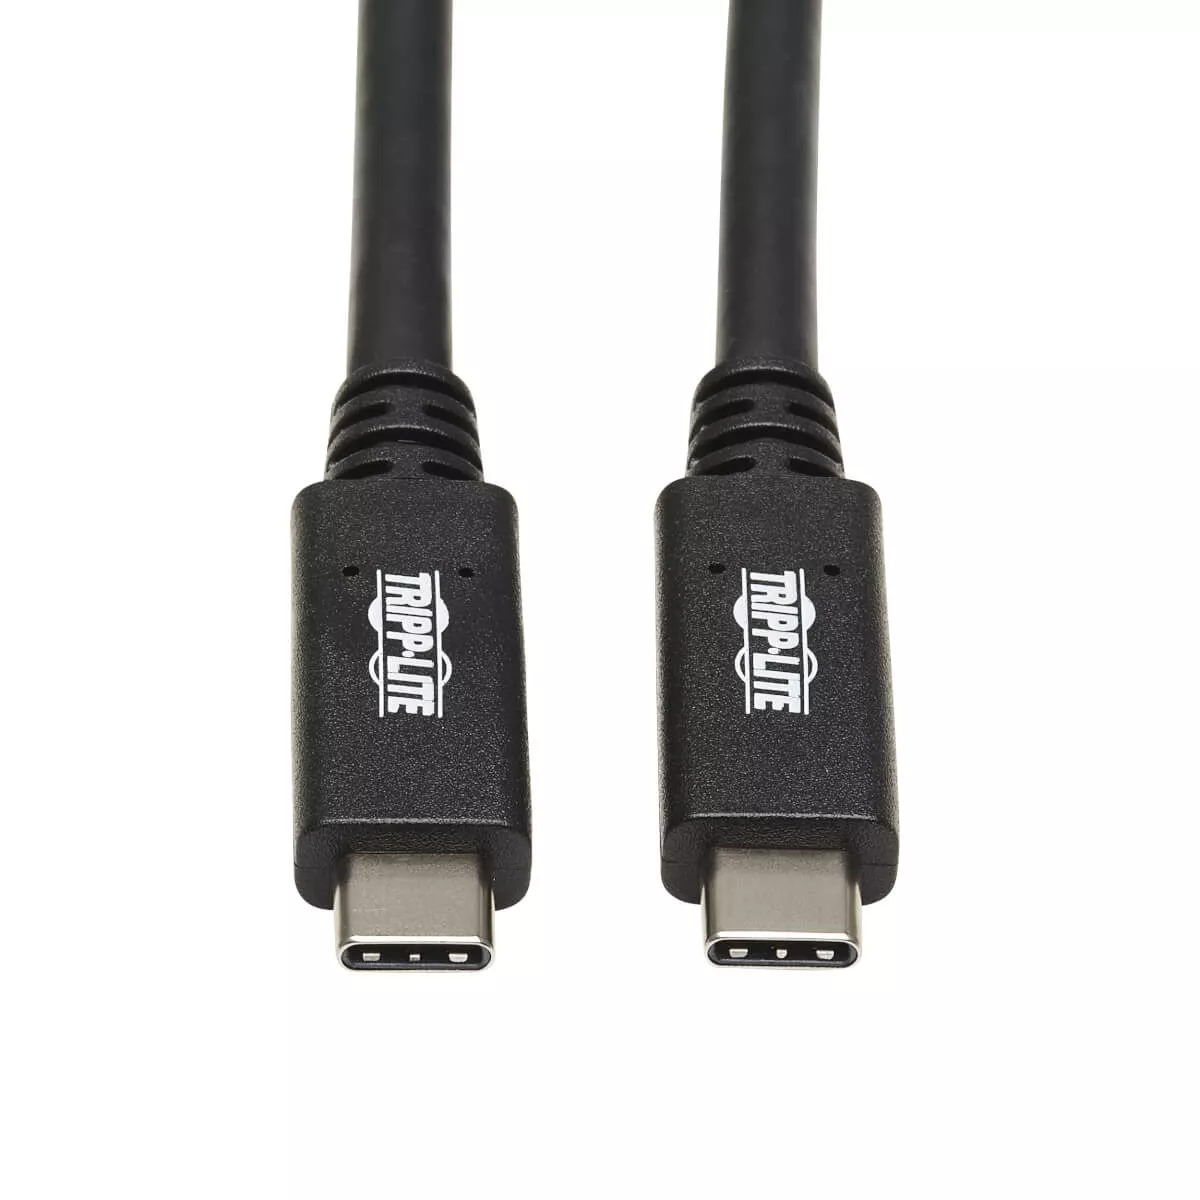 Revendeur officiel EATON TRIPPLITE USB-C Cable M/M - USB 3.1 Gen 2 10